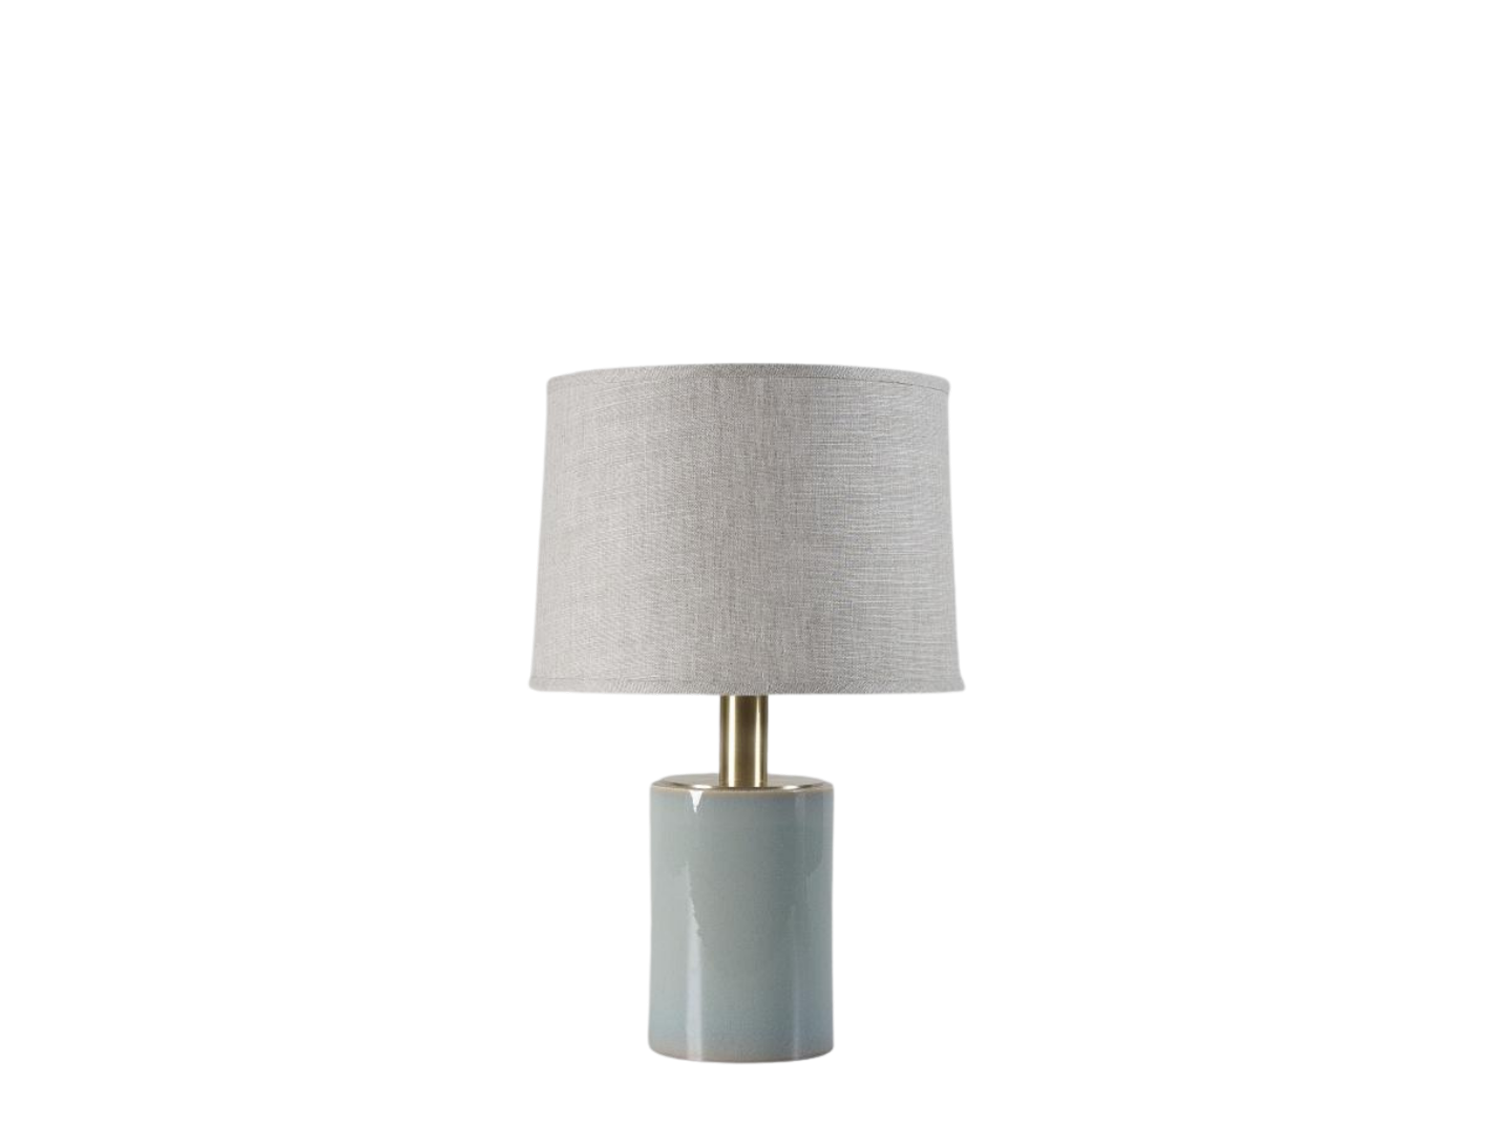 Fairfax Lamp